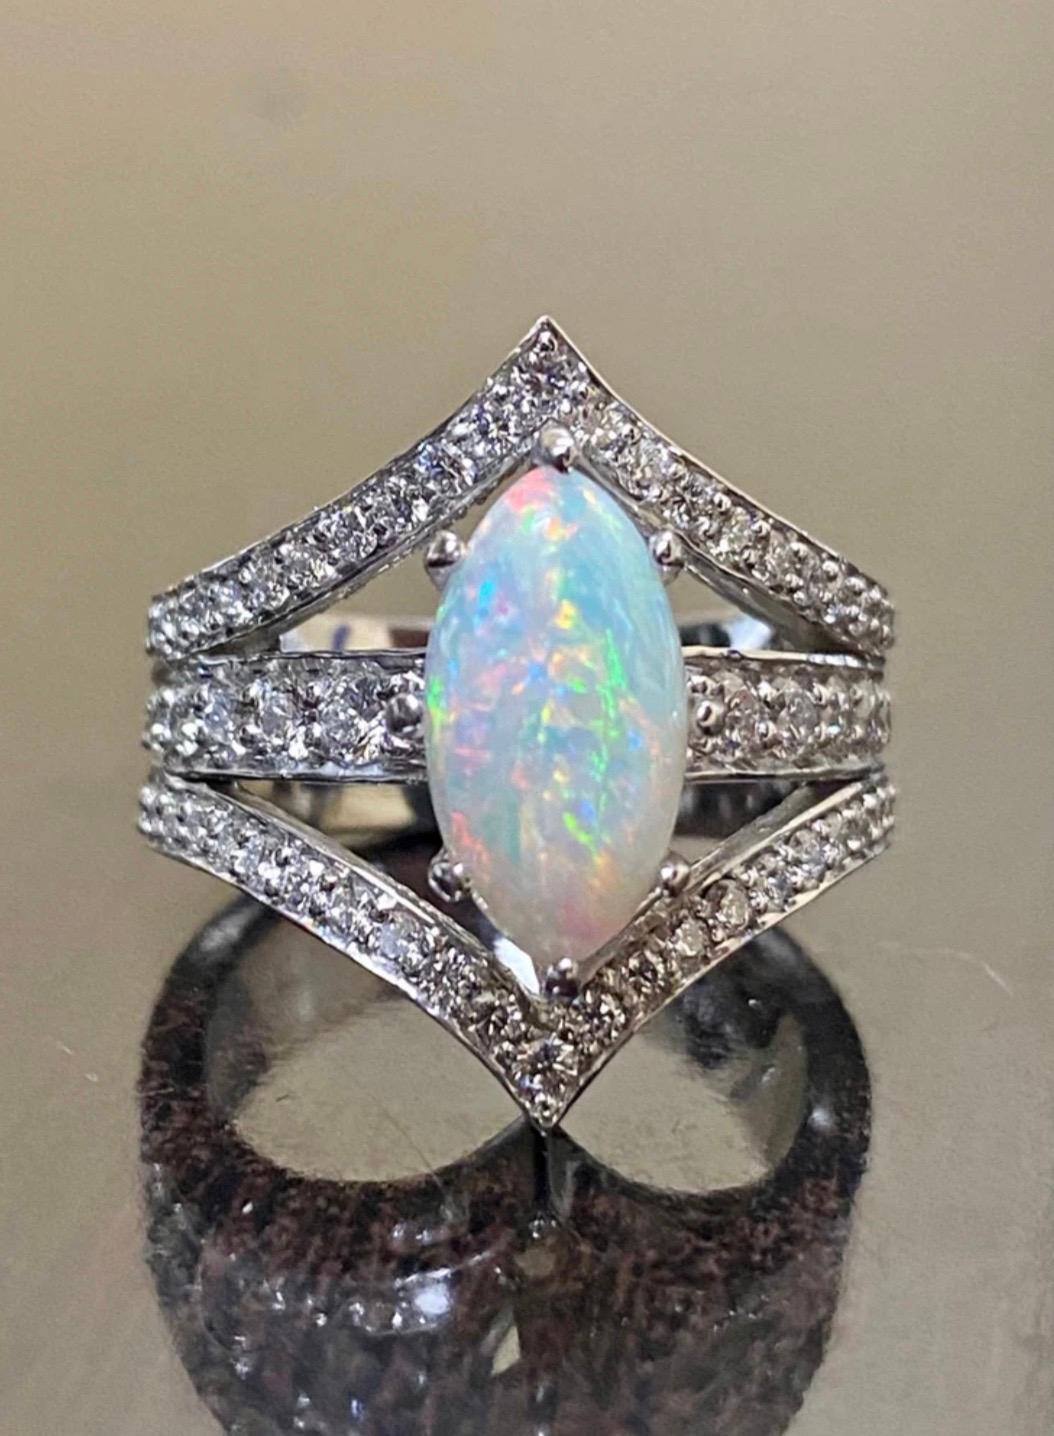 DeKara Design Collection'S

Unser neuestes Design! Ein eleganter und glänzender australischer Coober Pedy Opal, umgeben von Diamanten in einer handgefertigten Platinfassung.

Metall - 90% Platin, 10% Iridium. 20,60 Gramm

Steine- 1 echter